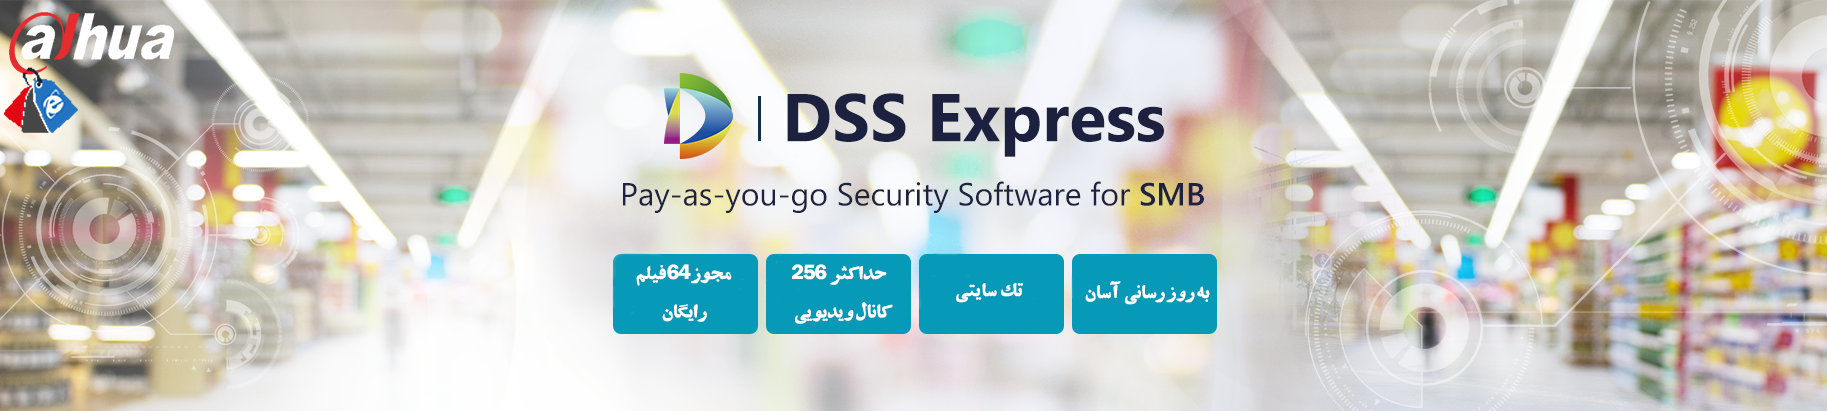 DSS Express